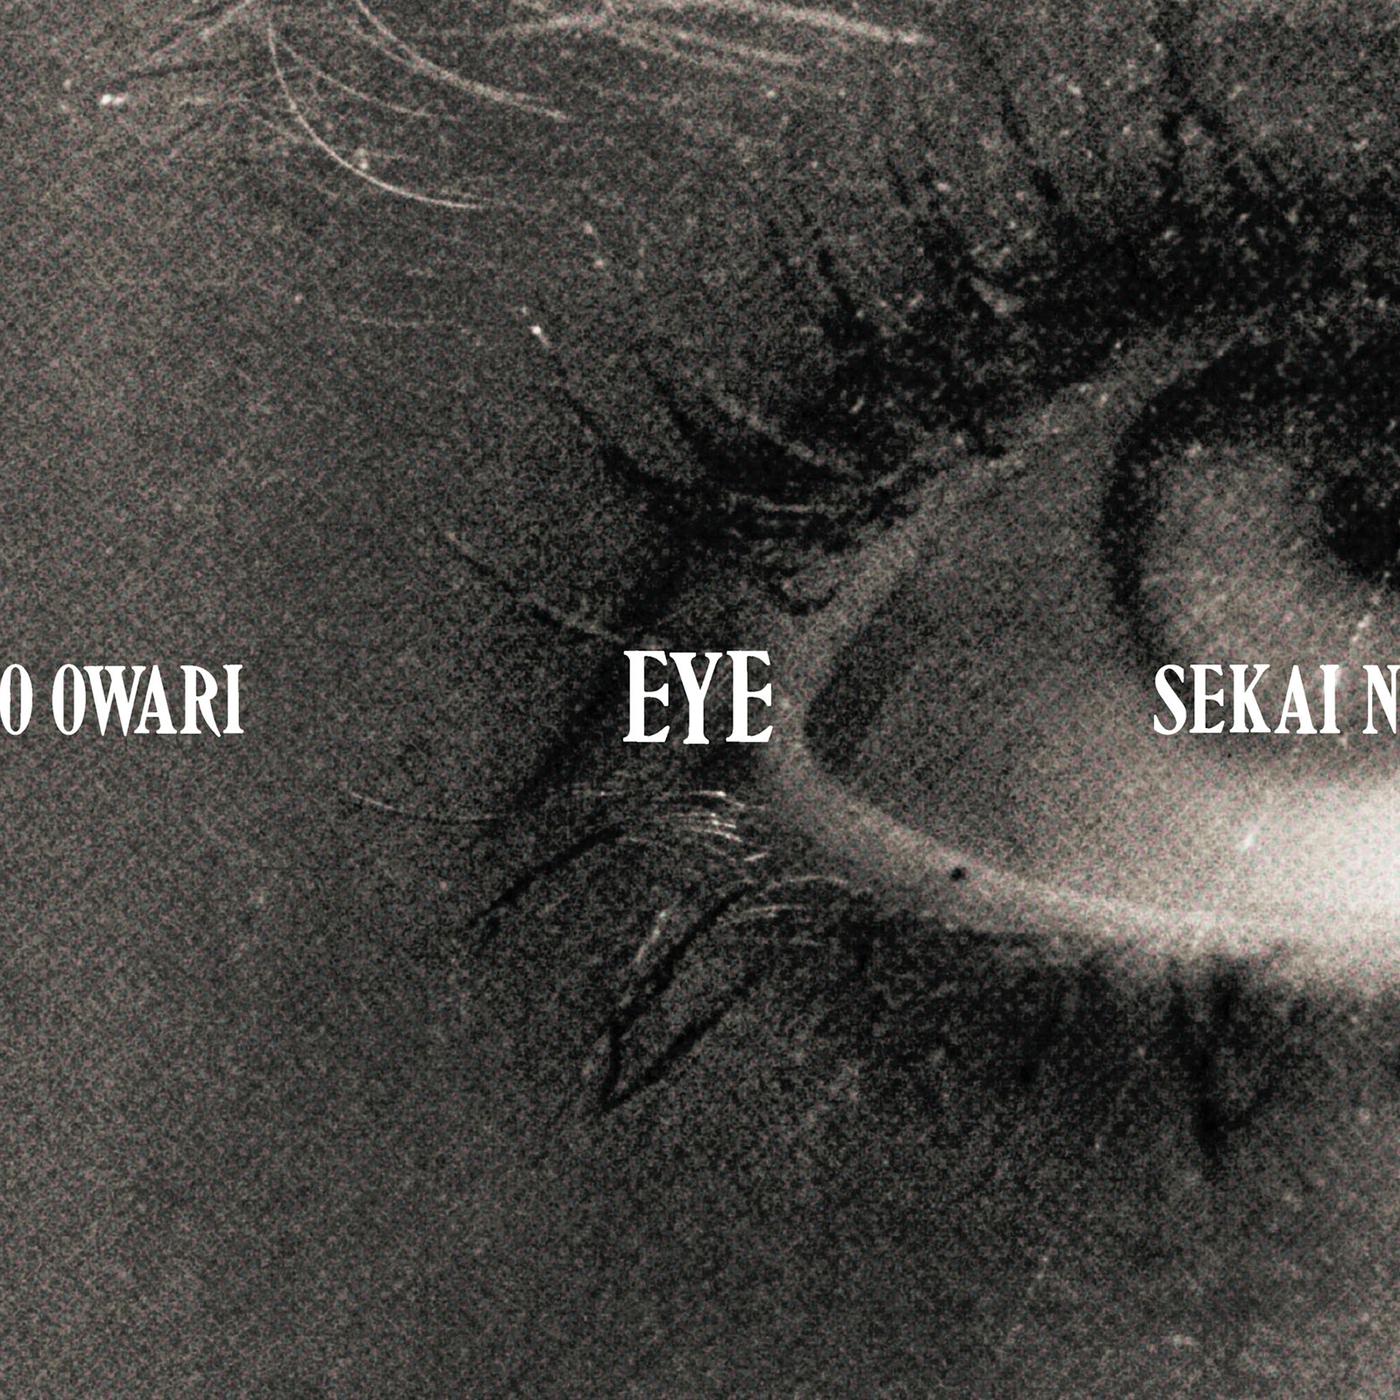 夜桜歌词 歌手Sekai no Owari-专辑Eye-单曲《夜桜》LRC歌词下载